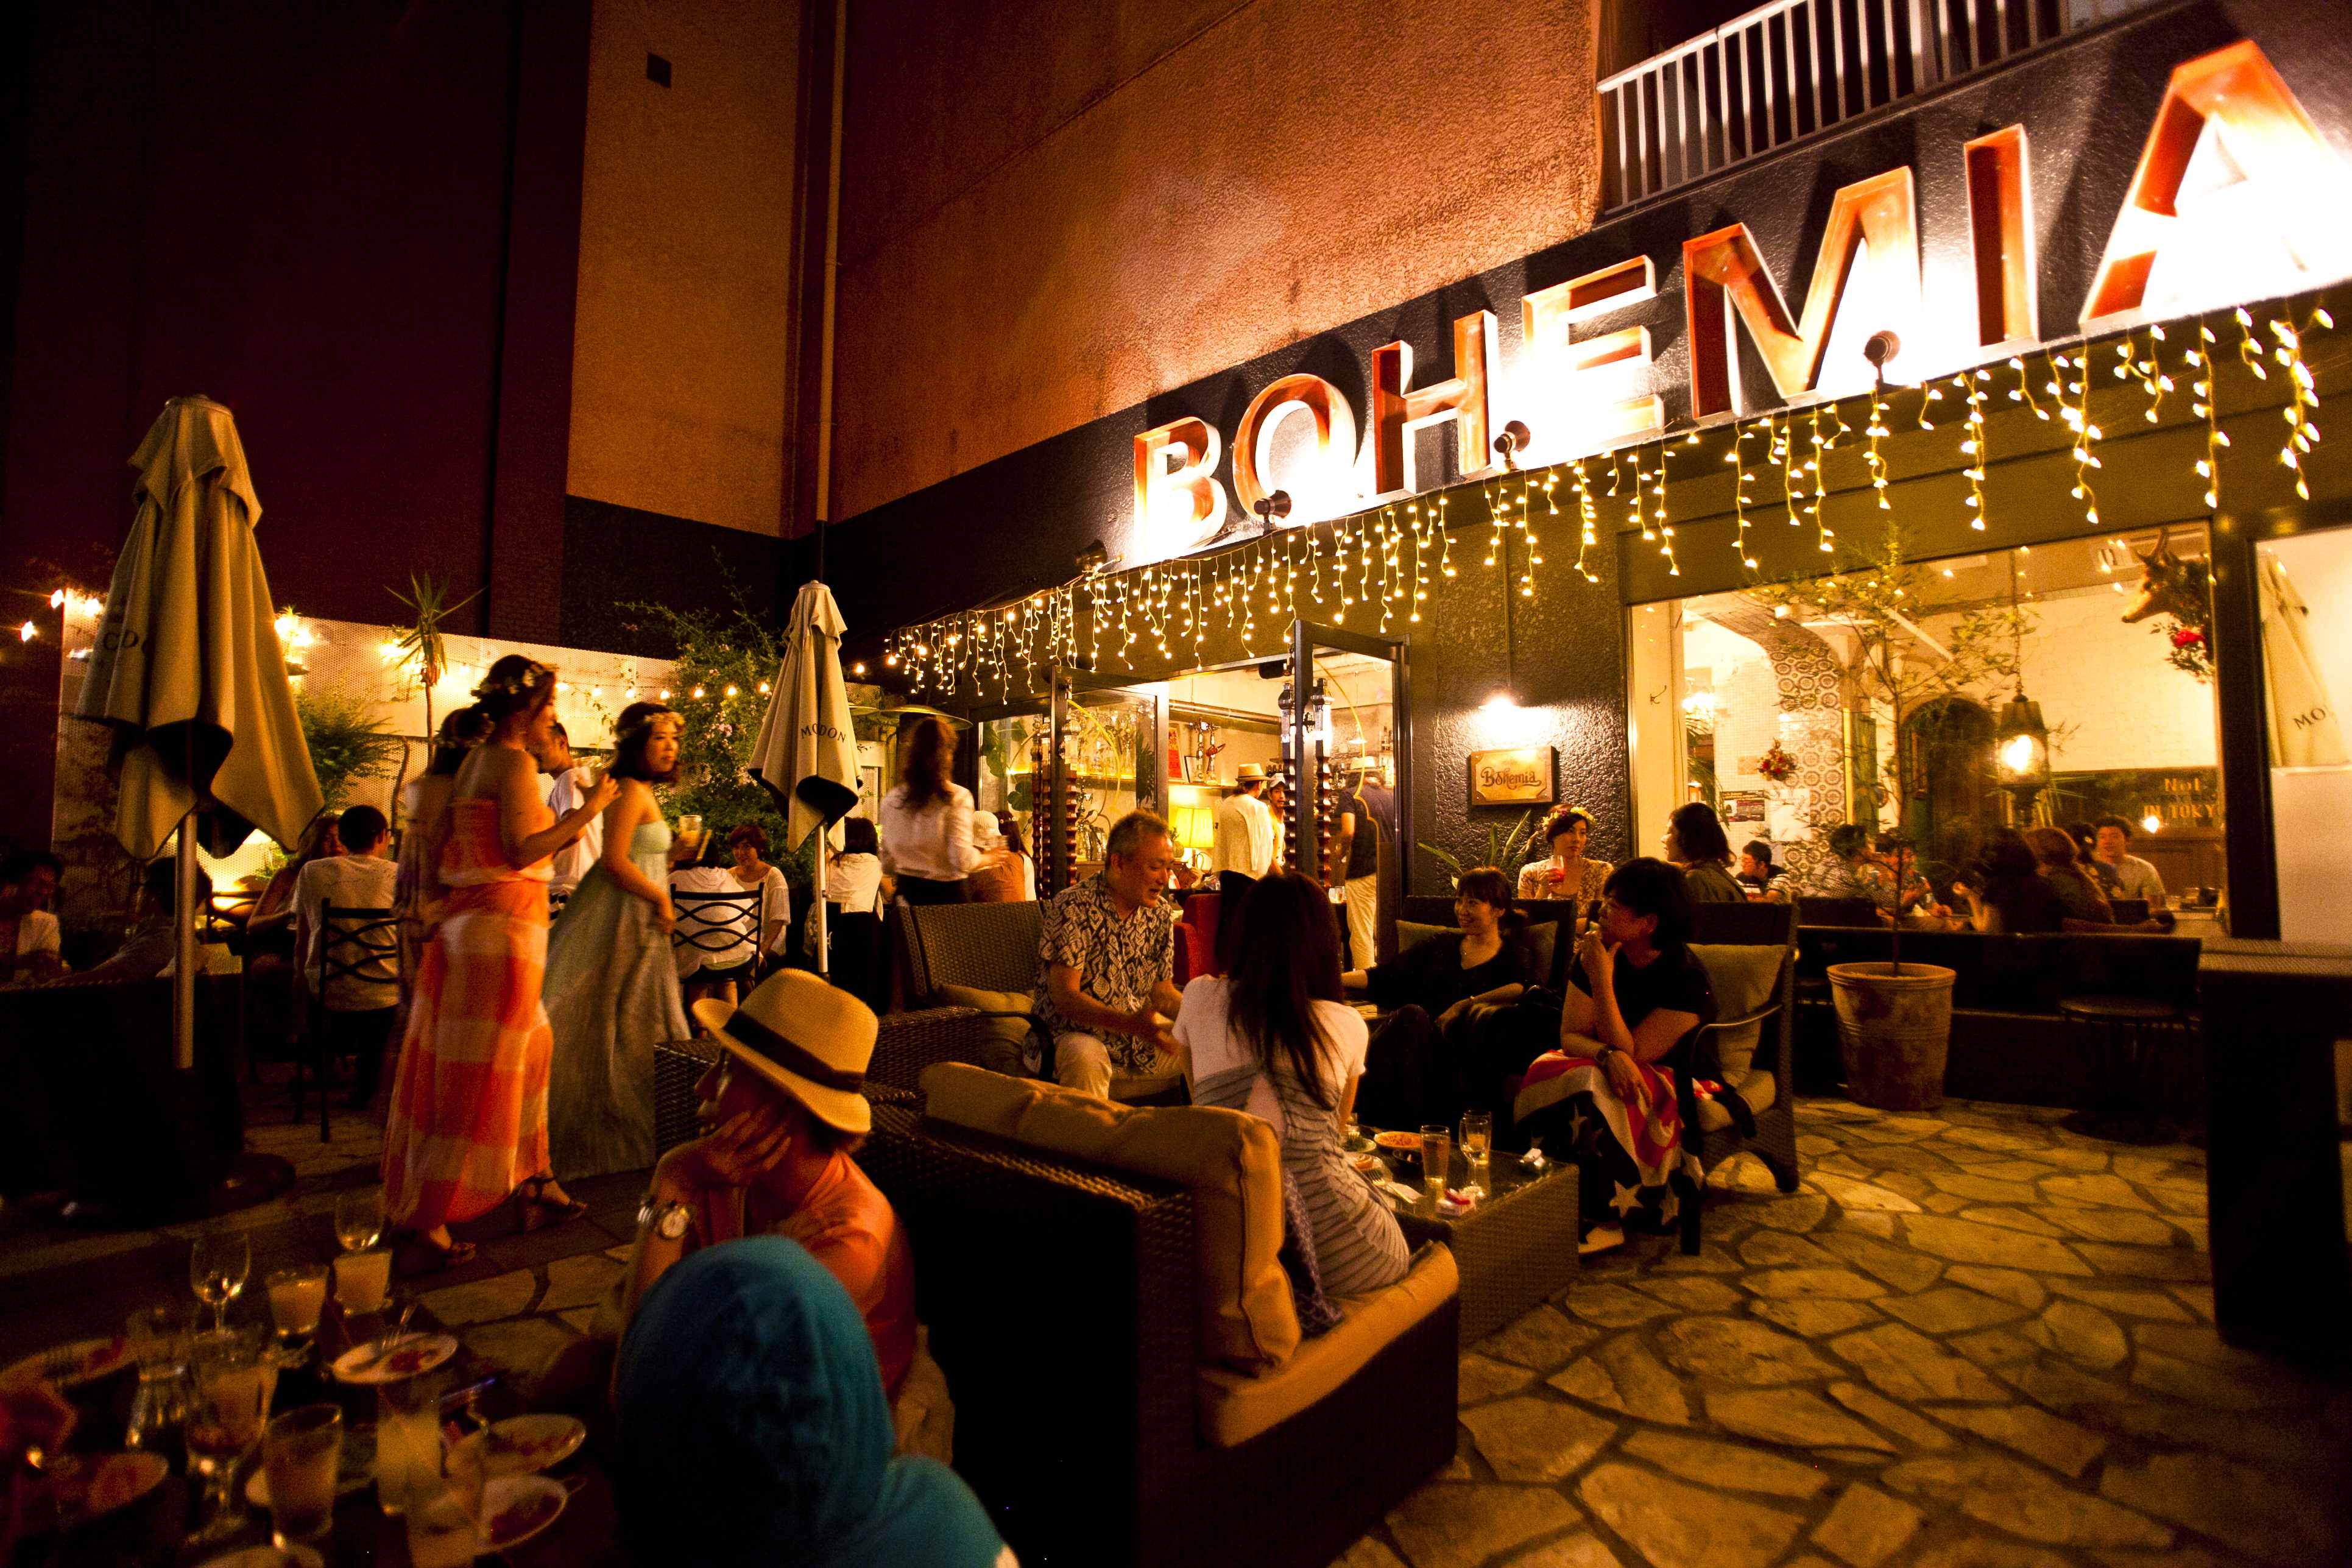 裏渋谷のオアシスカフェ Cafe Bohemia が3月11日 土 リニューアルオープン テラス 店内席ともに拡大し さらにくつろげる空間に生まれ変わります 株式会社ld Kのプレスリリース